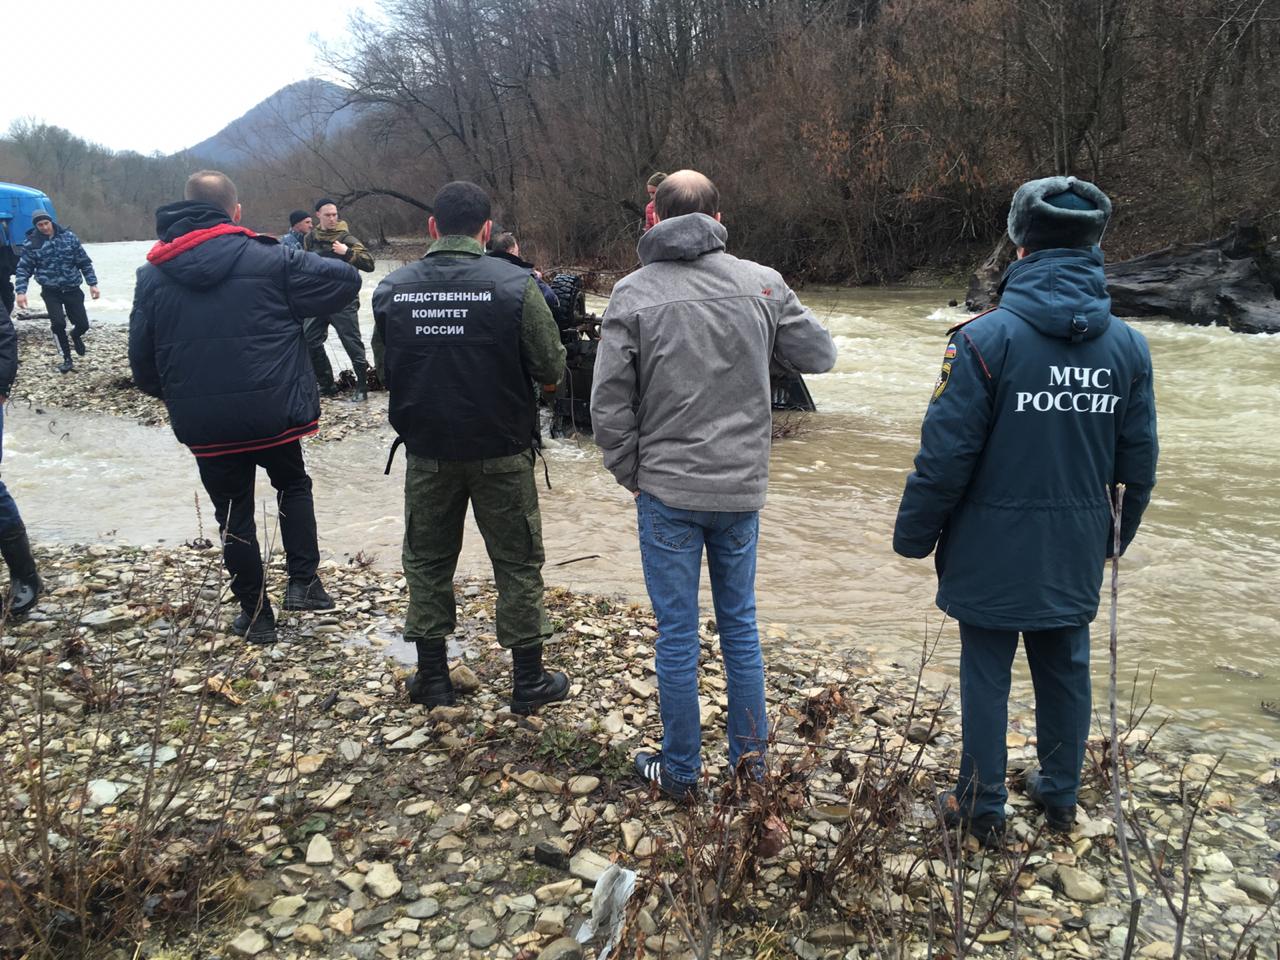 В Краснодарском крае в реку опрокинулся УАЗ с семьей, есть погибшие